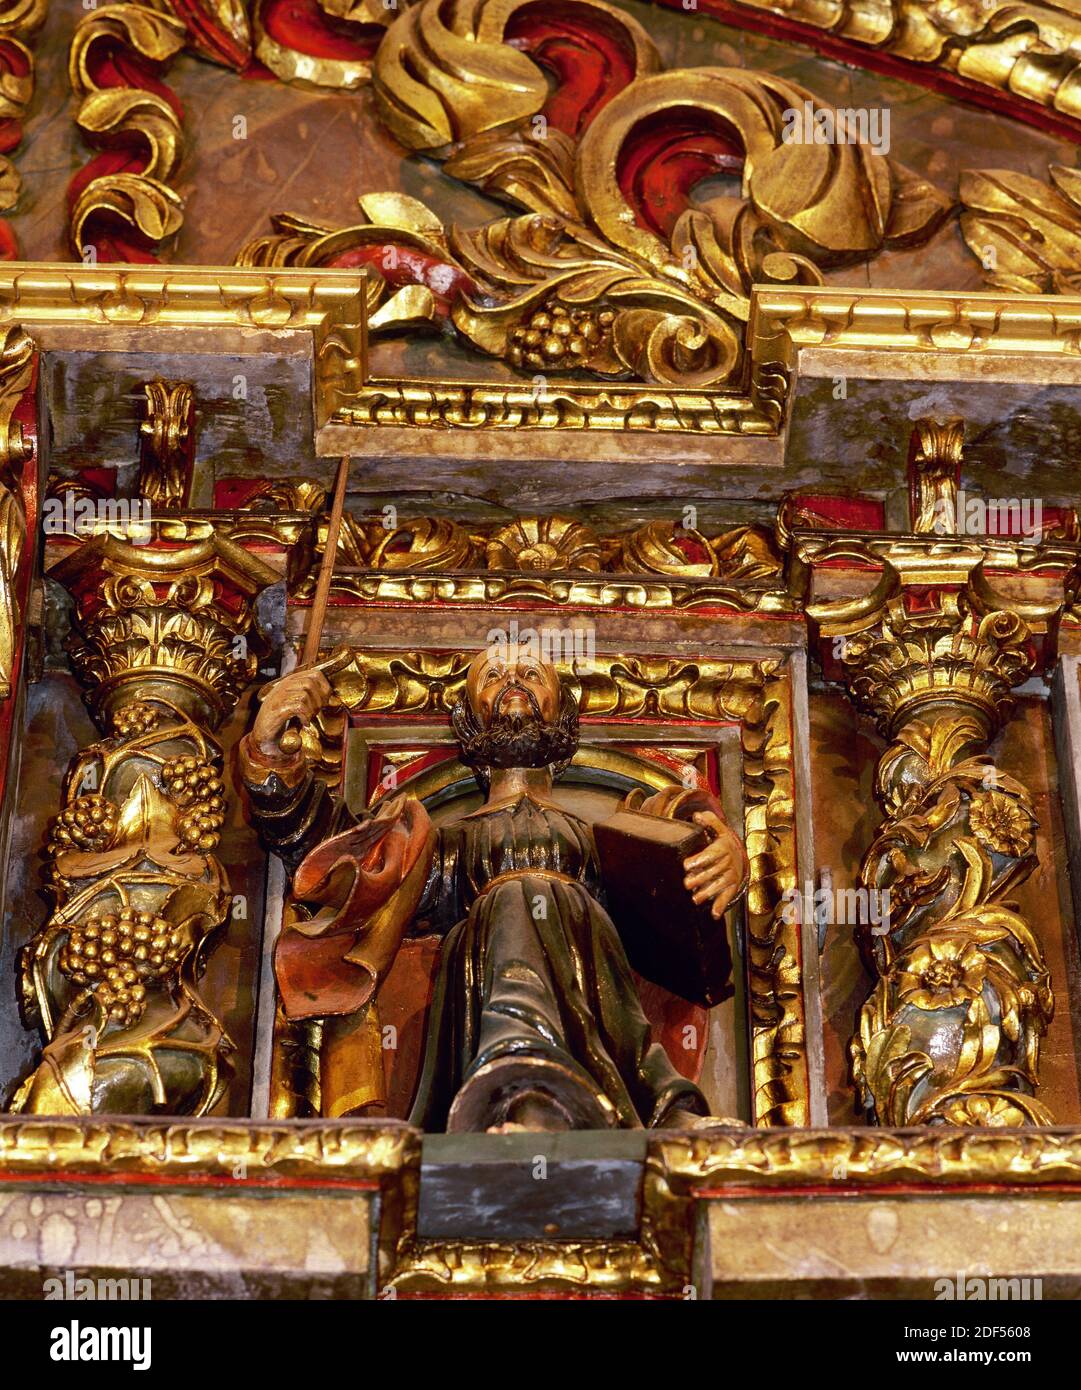 Spagna, Galizia, Provincia di la Coruña, San Andres de Teixido (Santo Andre de Teixido). Santuario. Pala d'altare barocca, XVIII secolo, sull'altare maggiore, di Miguel Lopez de la Peña. Immagine di uno dei dodici apostoli raffigurati. Foto Stock